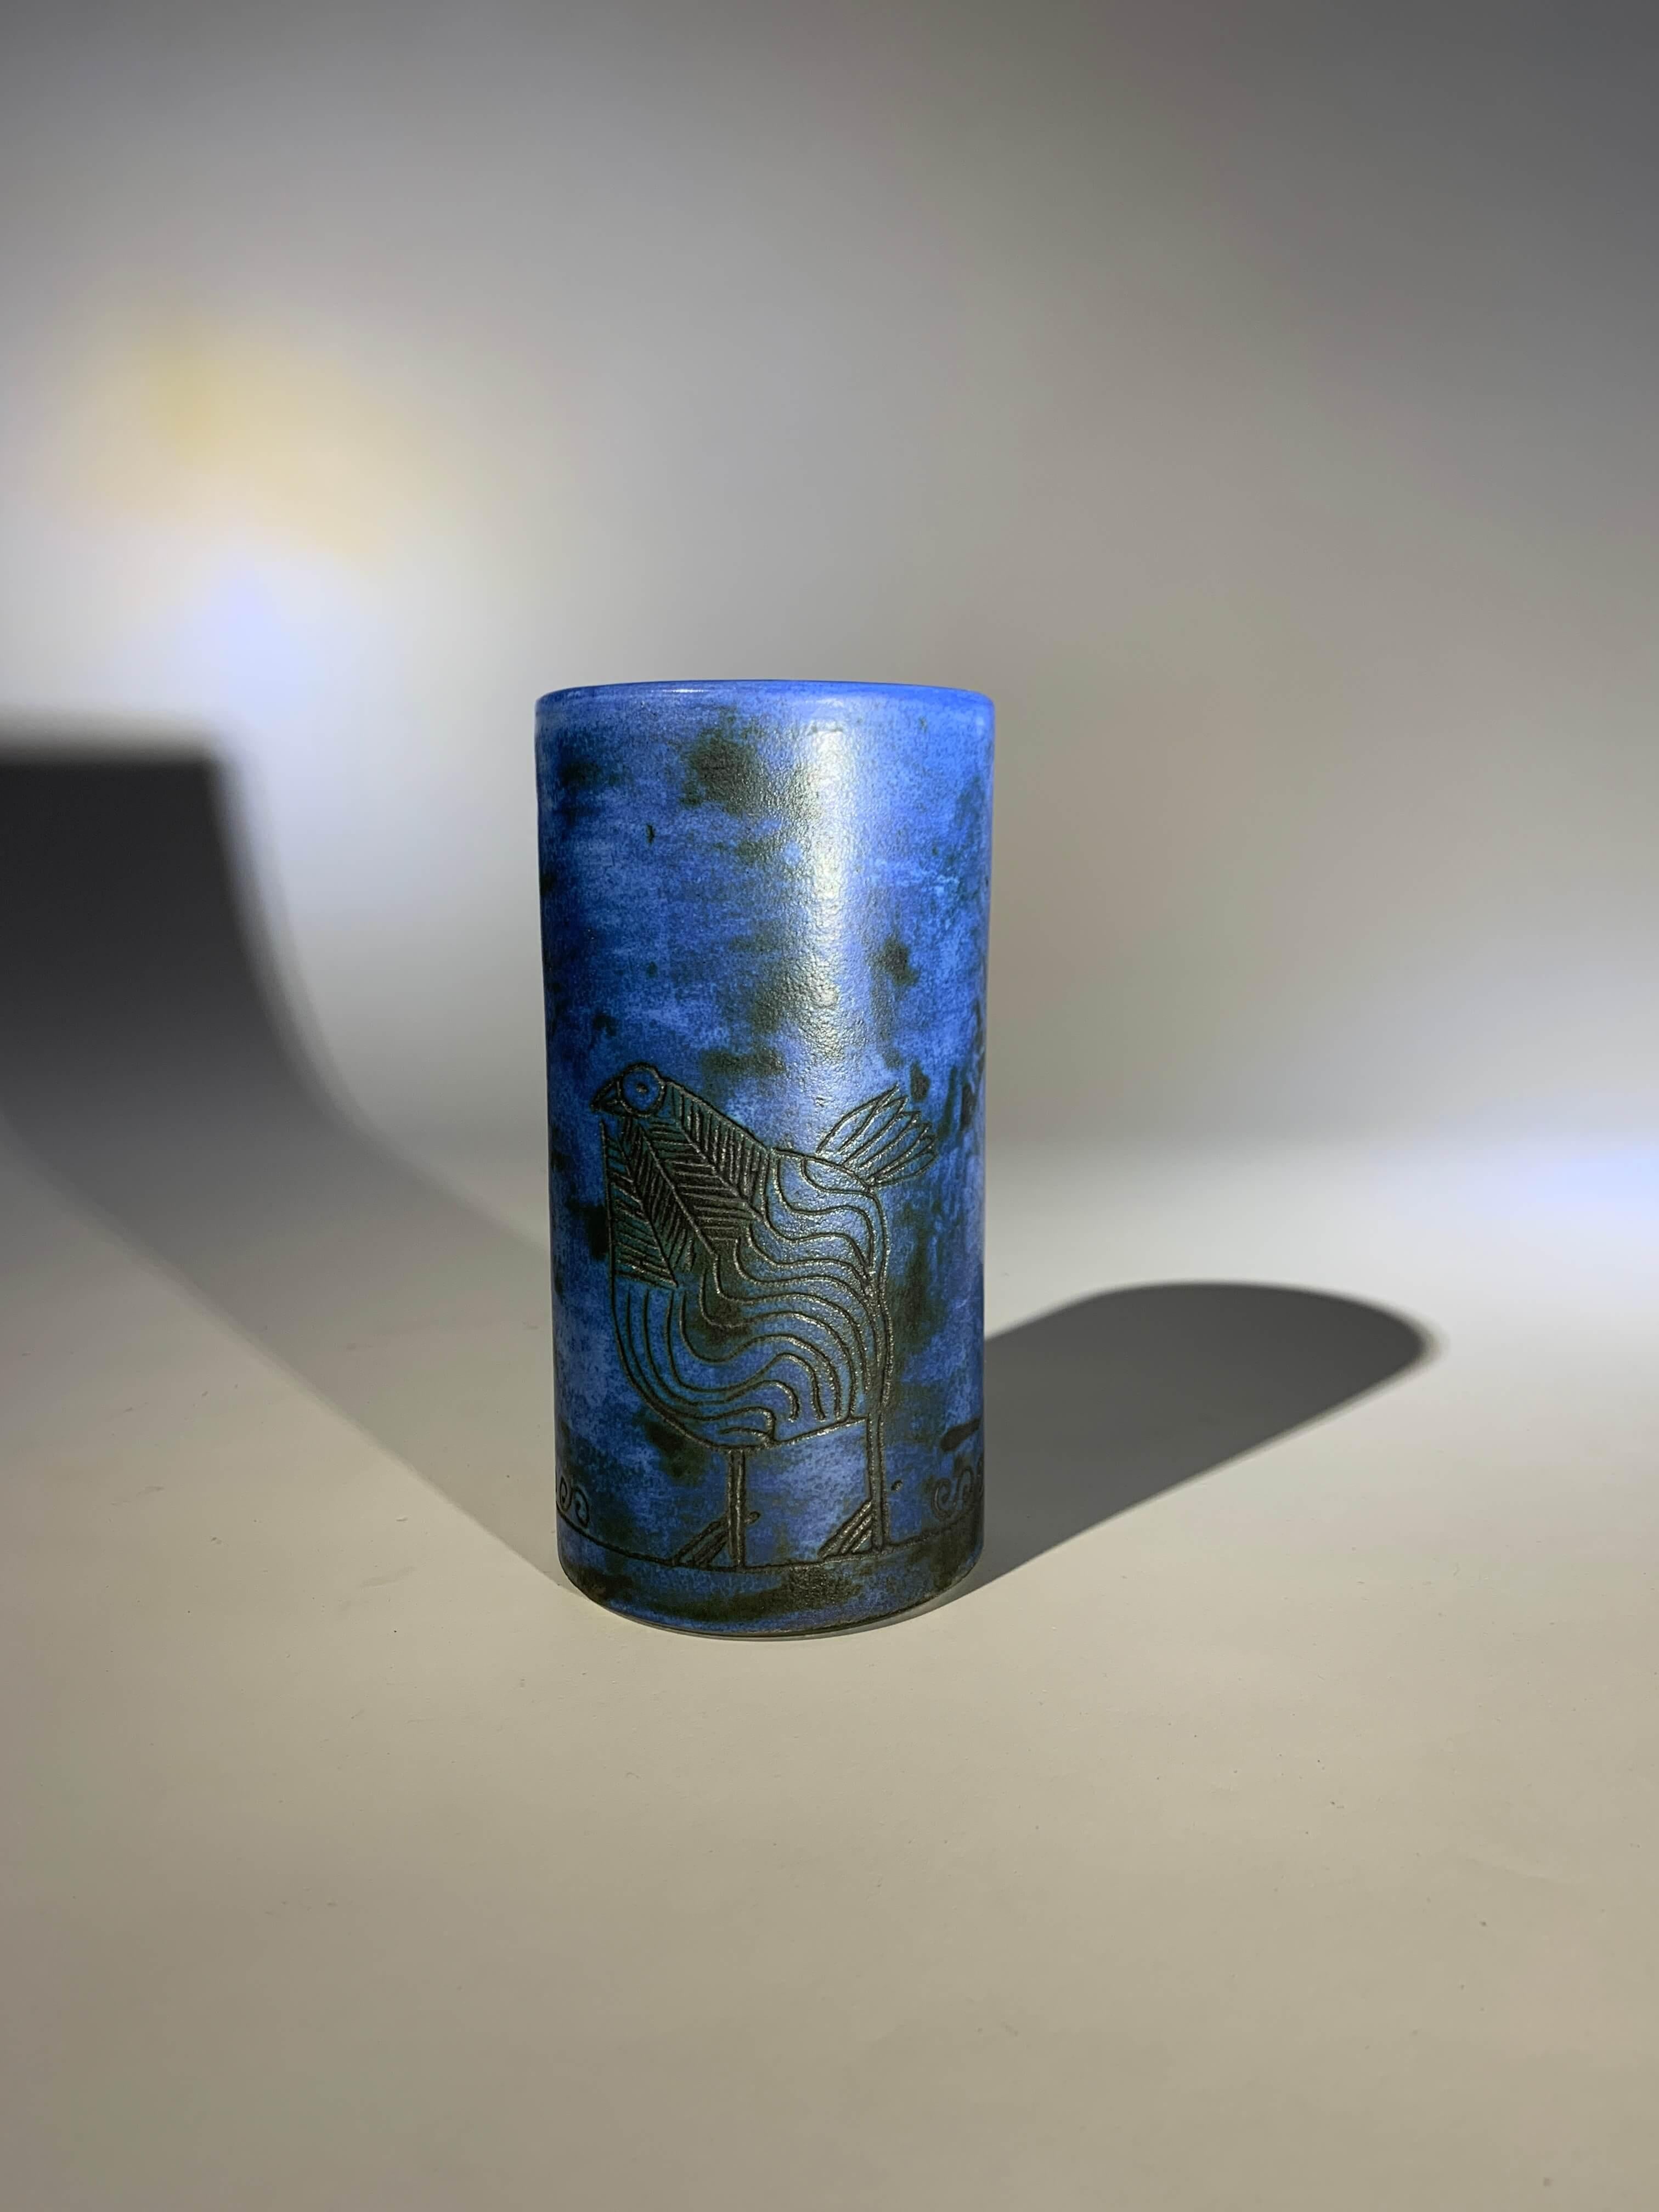 Glasierte Keramik-Rollvase in schönem Klein-Blau mit eingeschnittenem Dekor.
Künstler : Jacques Blin (1920-1995)

Signiert, perfekter Zustand.
Frankreich, ca. 1950